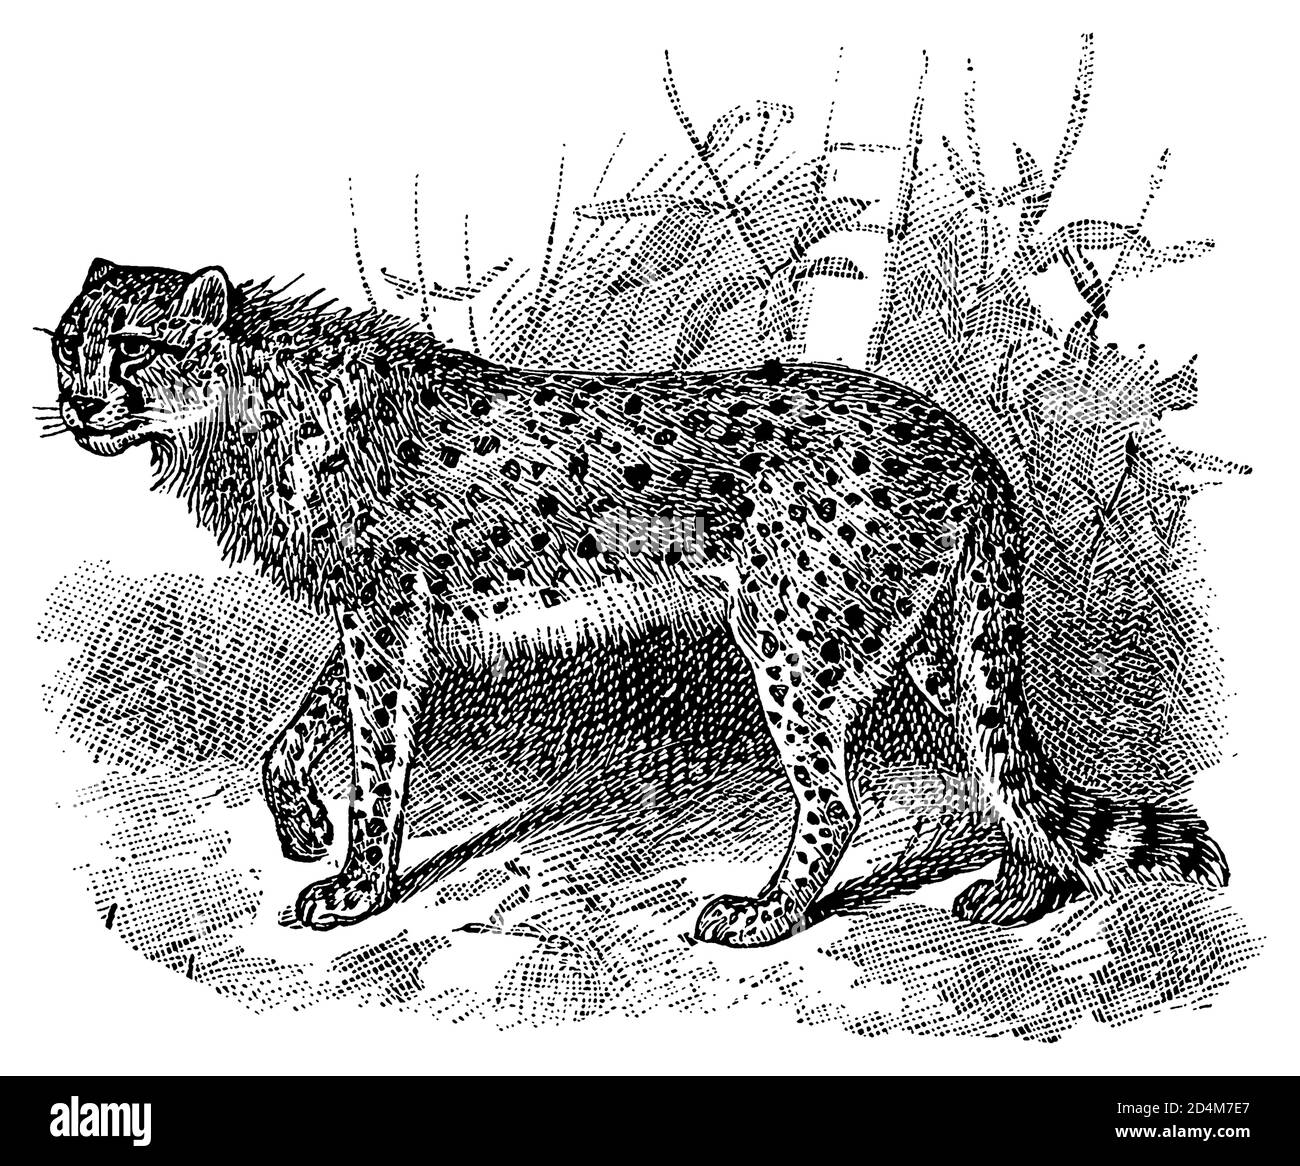 Antique engraving of a cheetah (isolated on white). Published in Systematischer Bilder-Atlas zum Conversations-Lexikon, Ikonographische Encyklopaedie Stock Photo